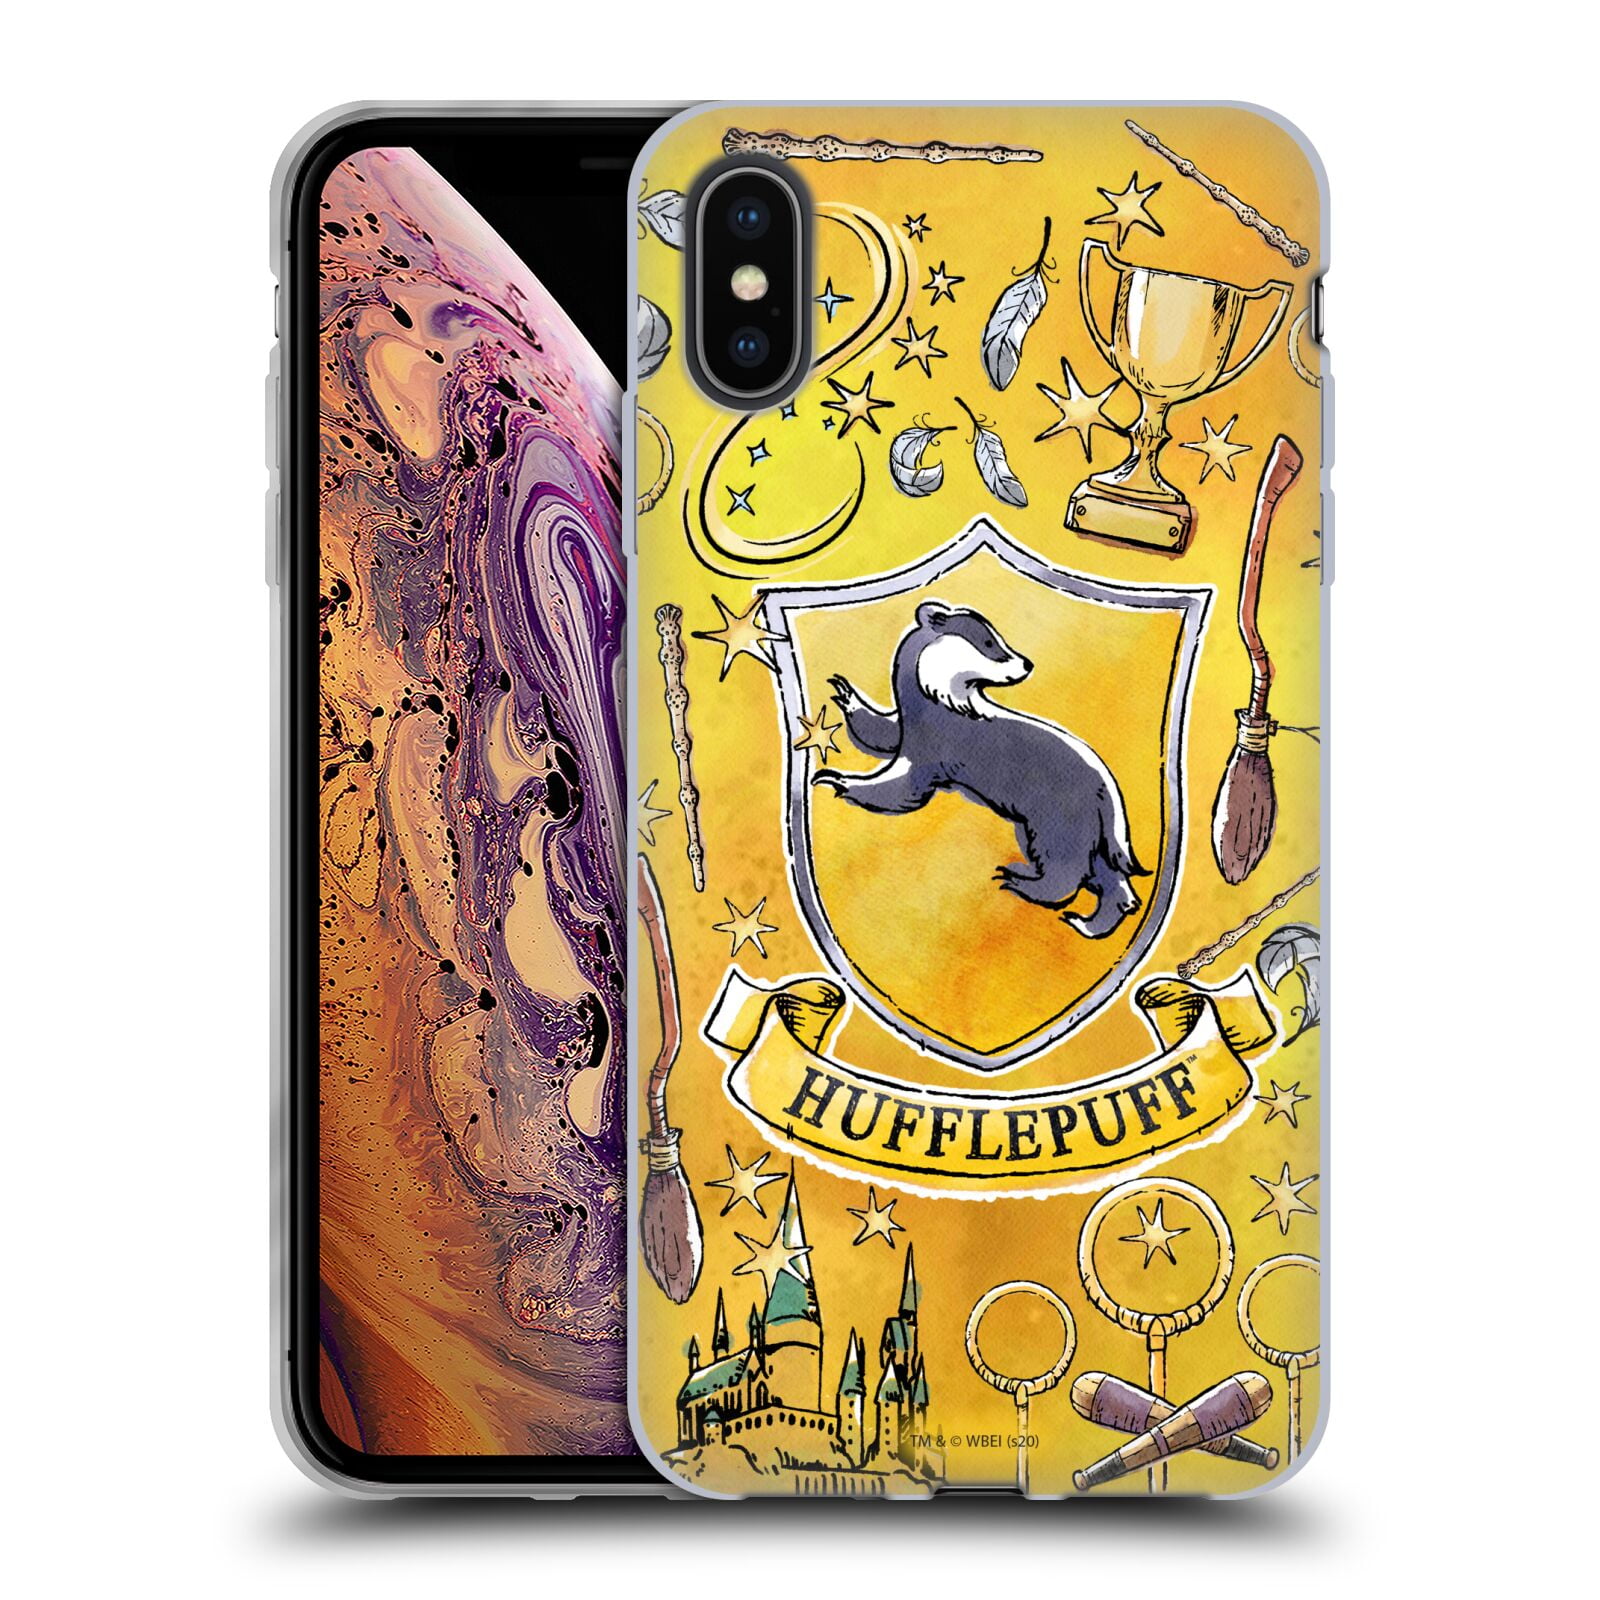 Head Case Designs Licenciado Oficialmente Harry Potter Slytherin Aguamenti Deathly Hallows IX Funda de Gel Negro Compatible con Apple iPhone 7 Plus/iPhone 8 Plus 